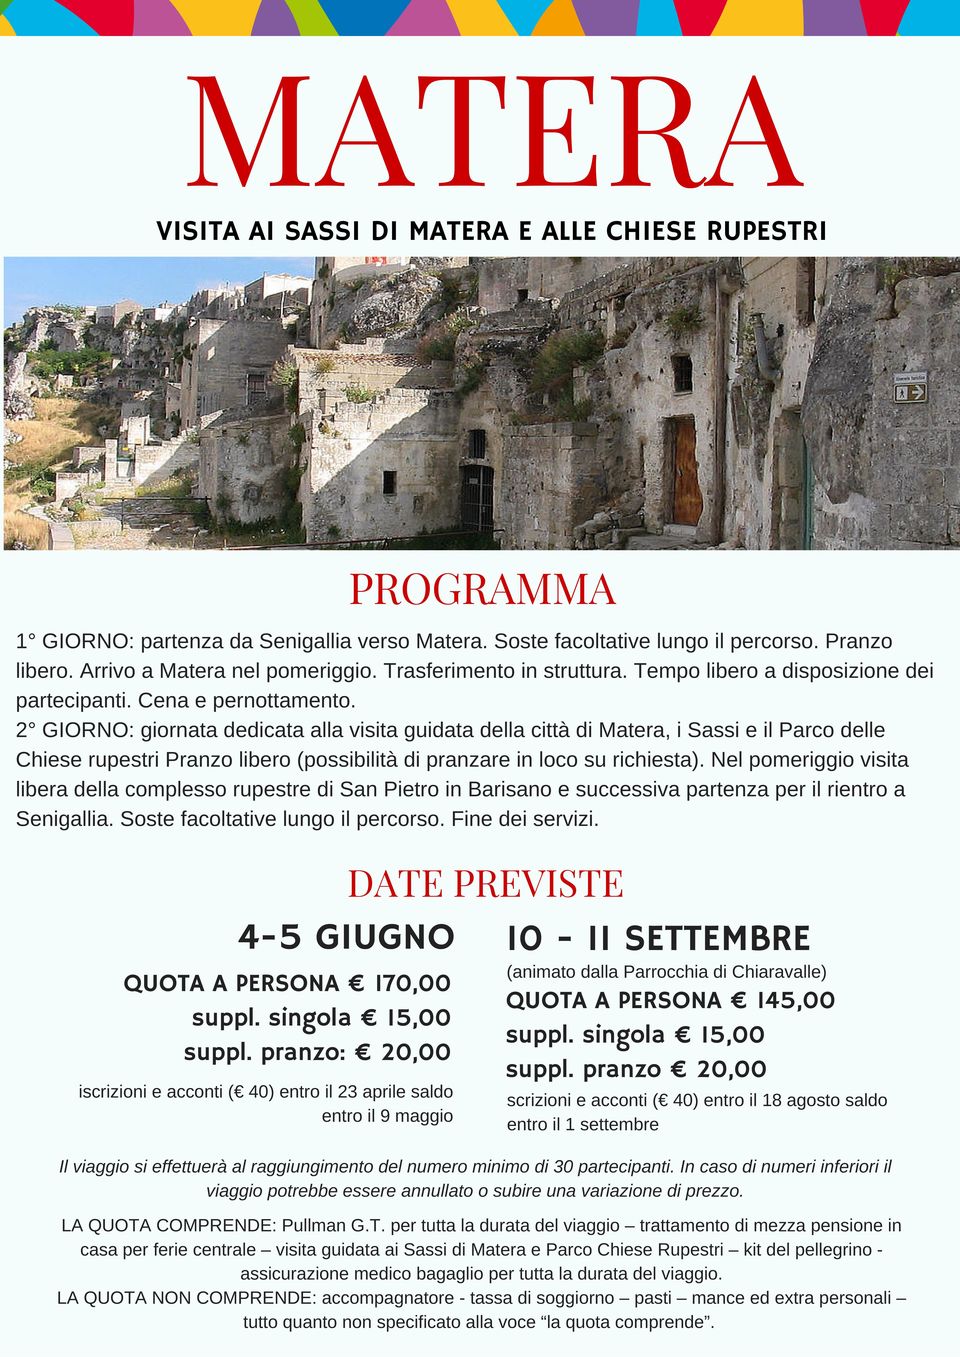 2 GIORNO: giornata dedicata alla visita guidata della città di Matera, i Sassi e il Parco delle Chiese rupestri Pranzo libero (possibilità di pranzare in loco su richiesta).